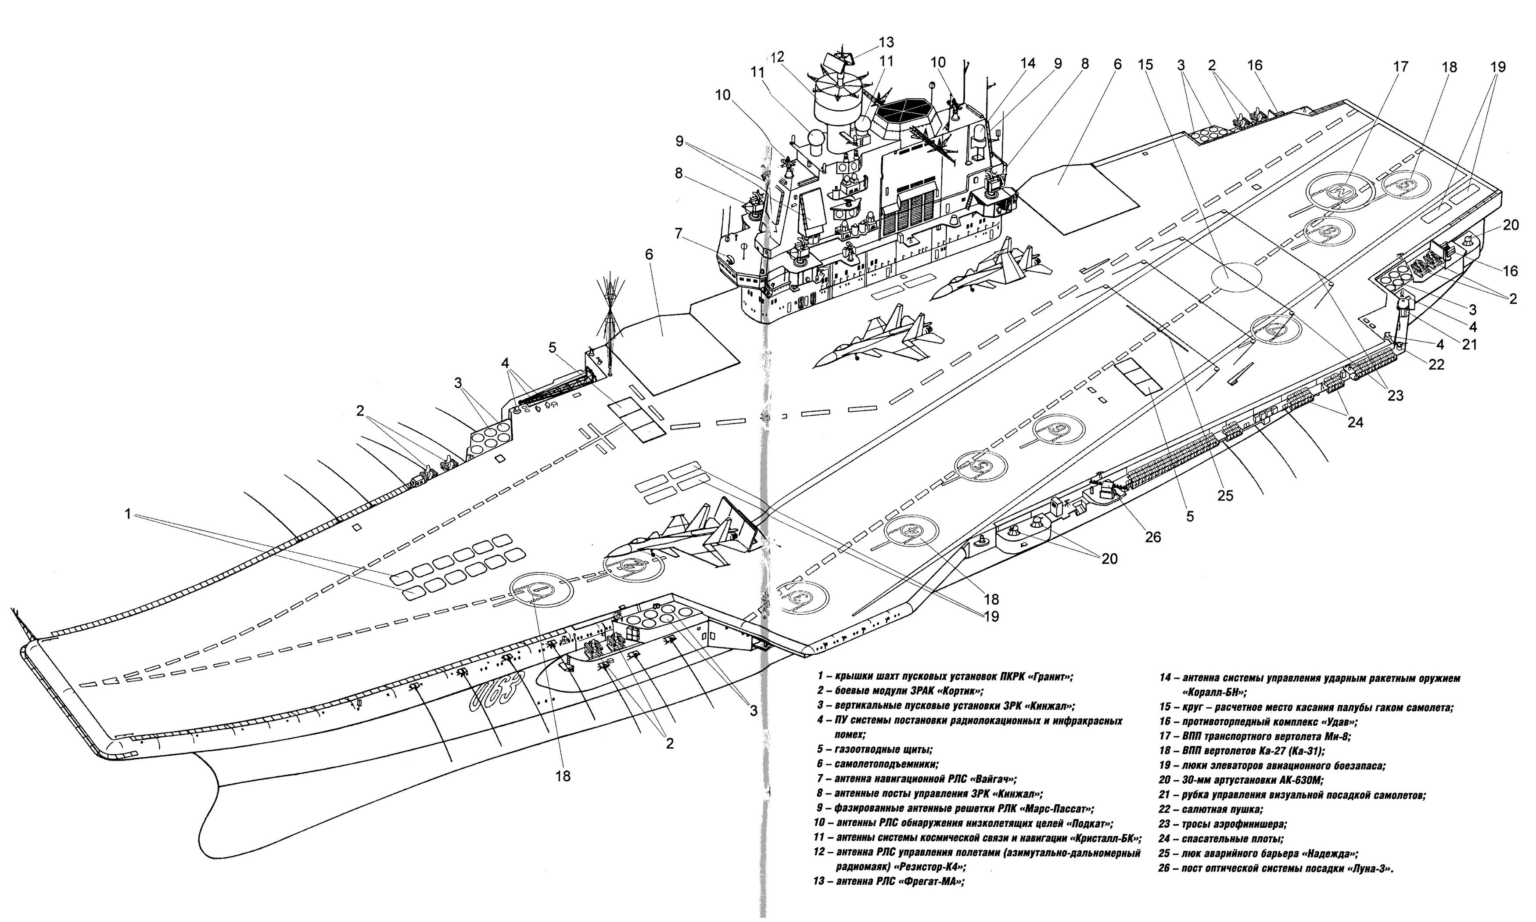 Адмирал кузнецов - тяжёлый авианесущий крейсер (тавкр) проекта 1143.5 ⋆ северо-западный вестник